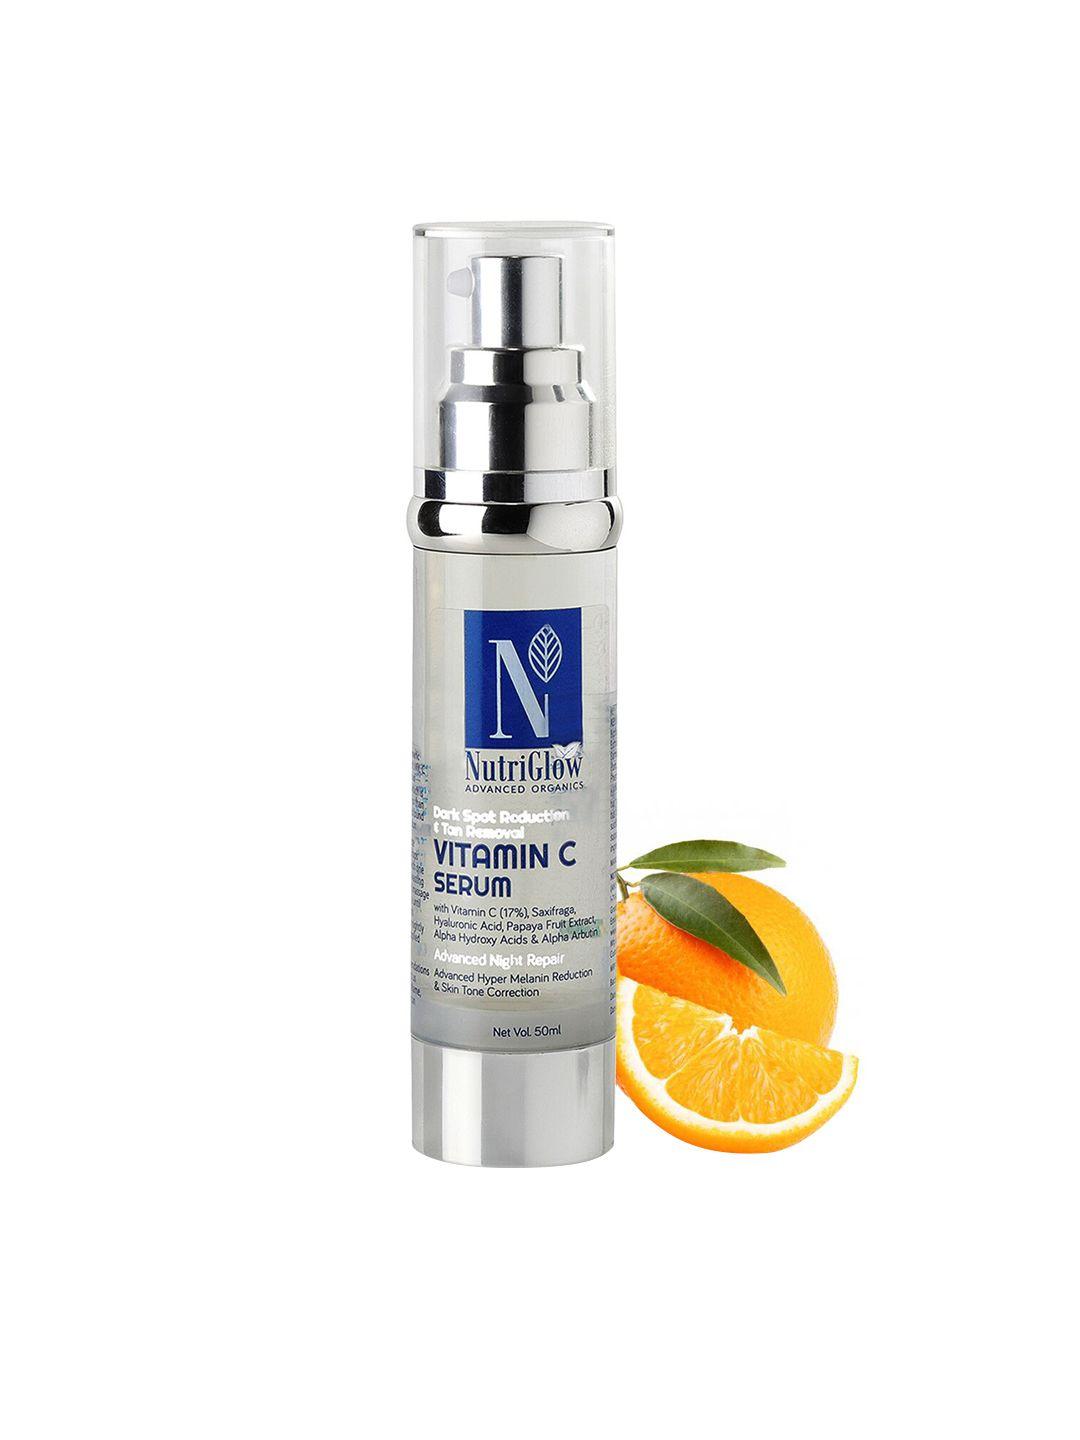 nutriglow advanced organics vitamin c serum for dark spots & tan removal - 50ml